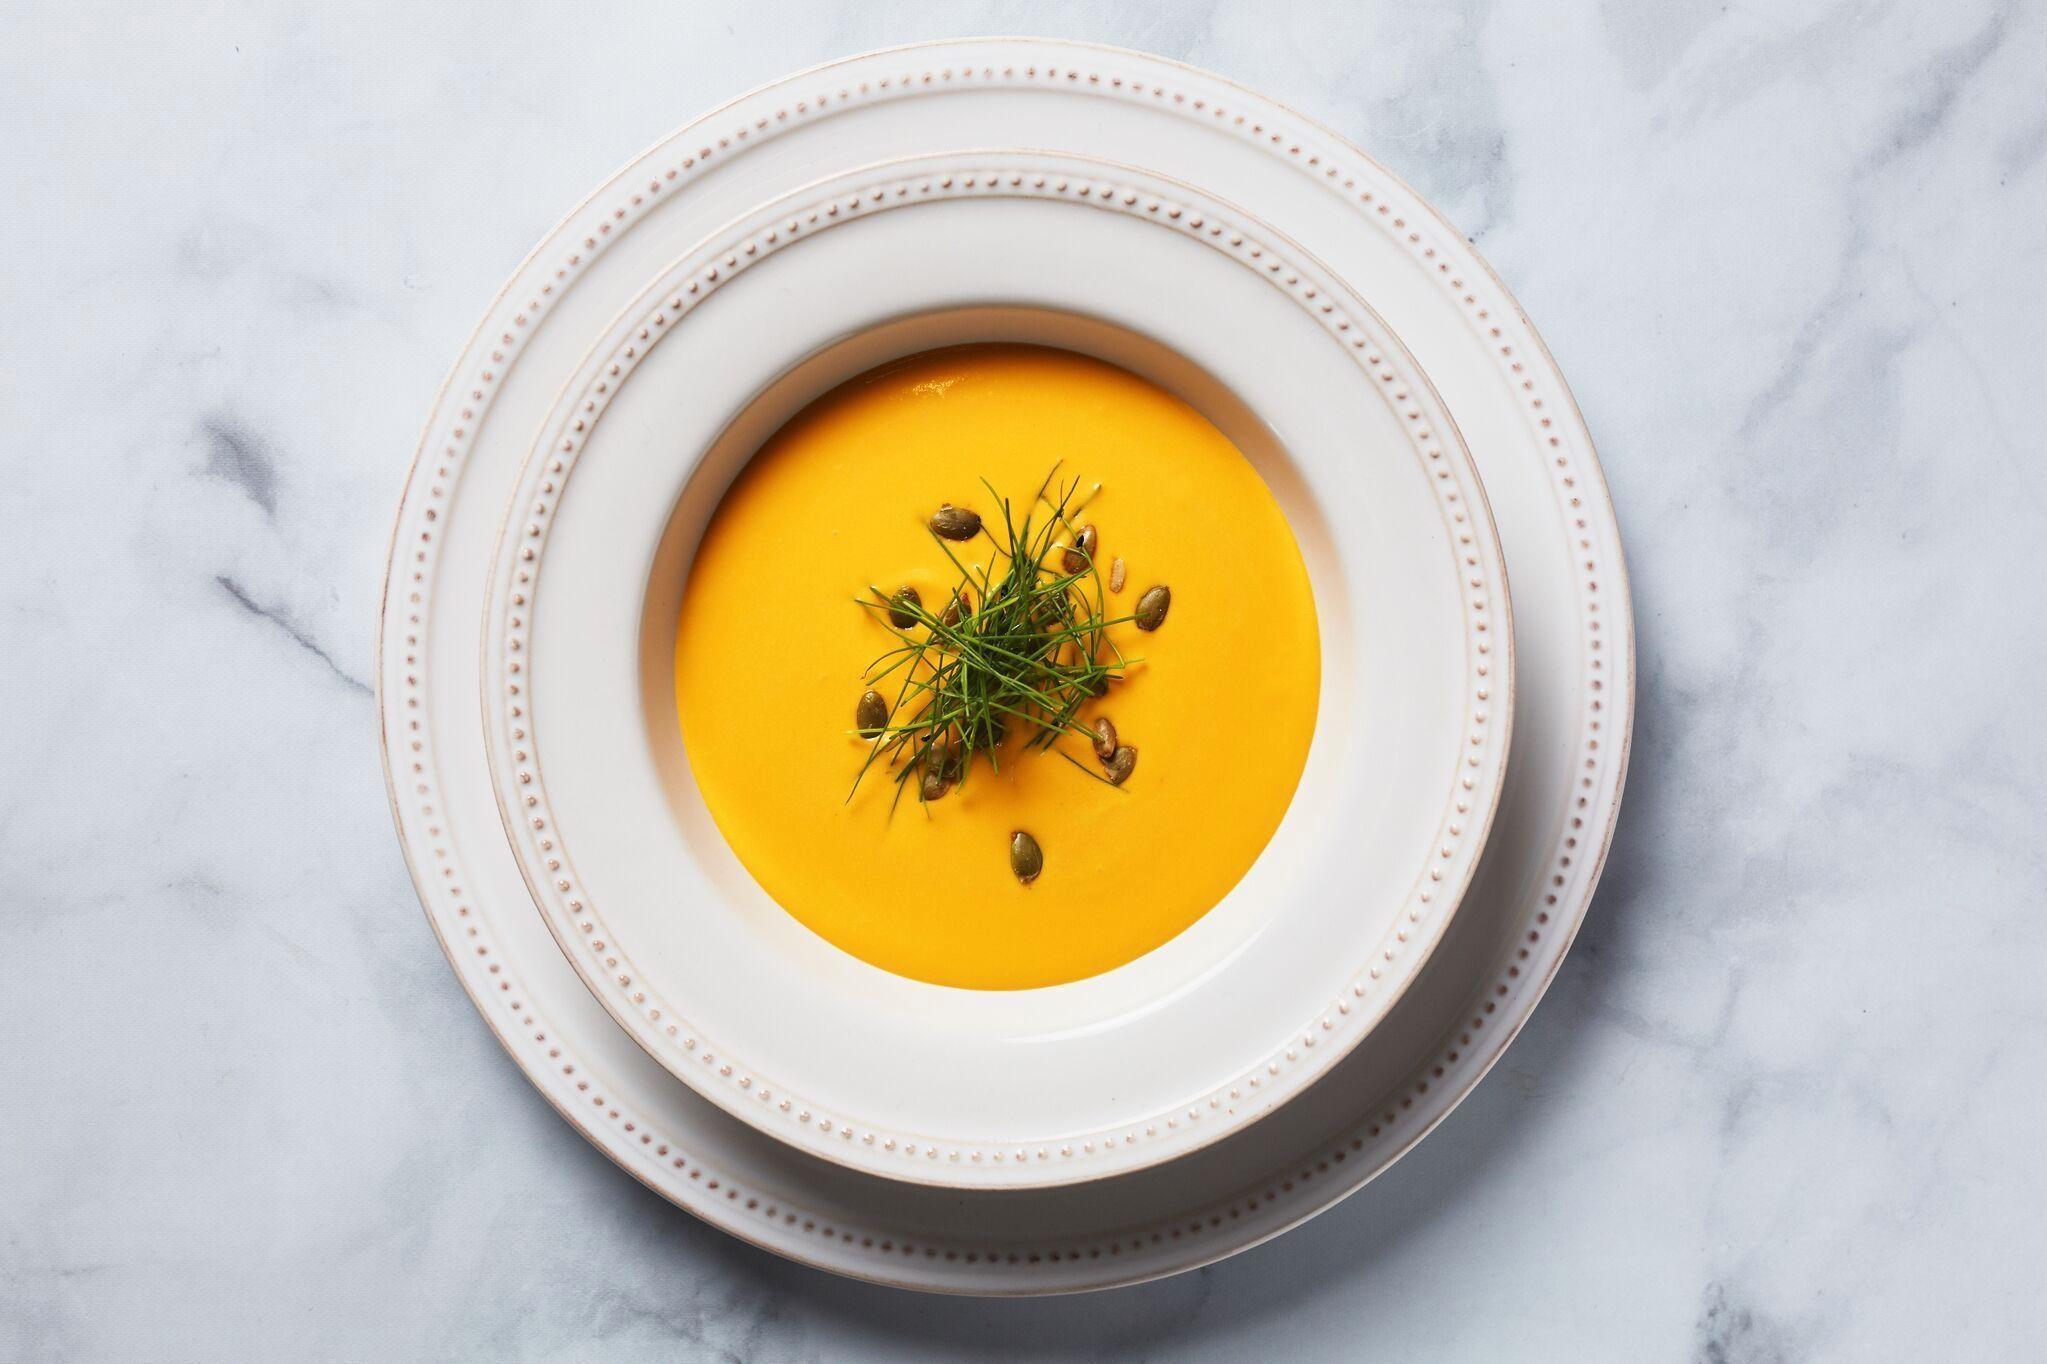 FORRETT: Vichyssoise er en tykk franskinspirert suppe basert på poteter og løk, og serveres tradisjonelt kald. Foto: Golden Globe